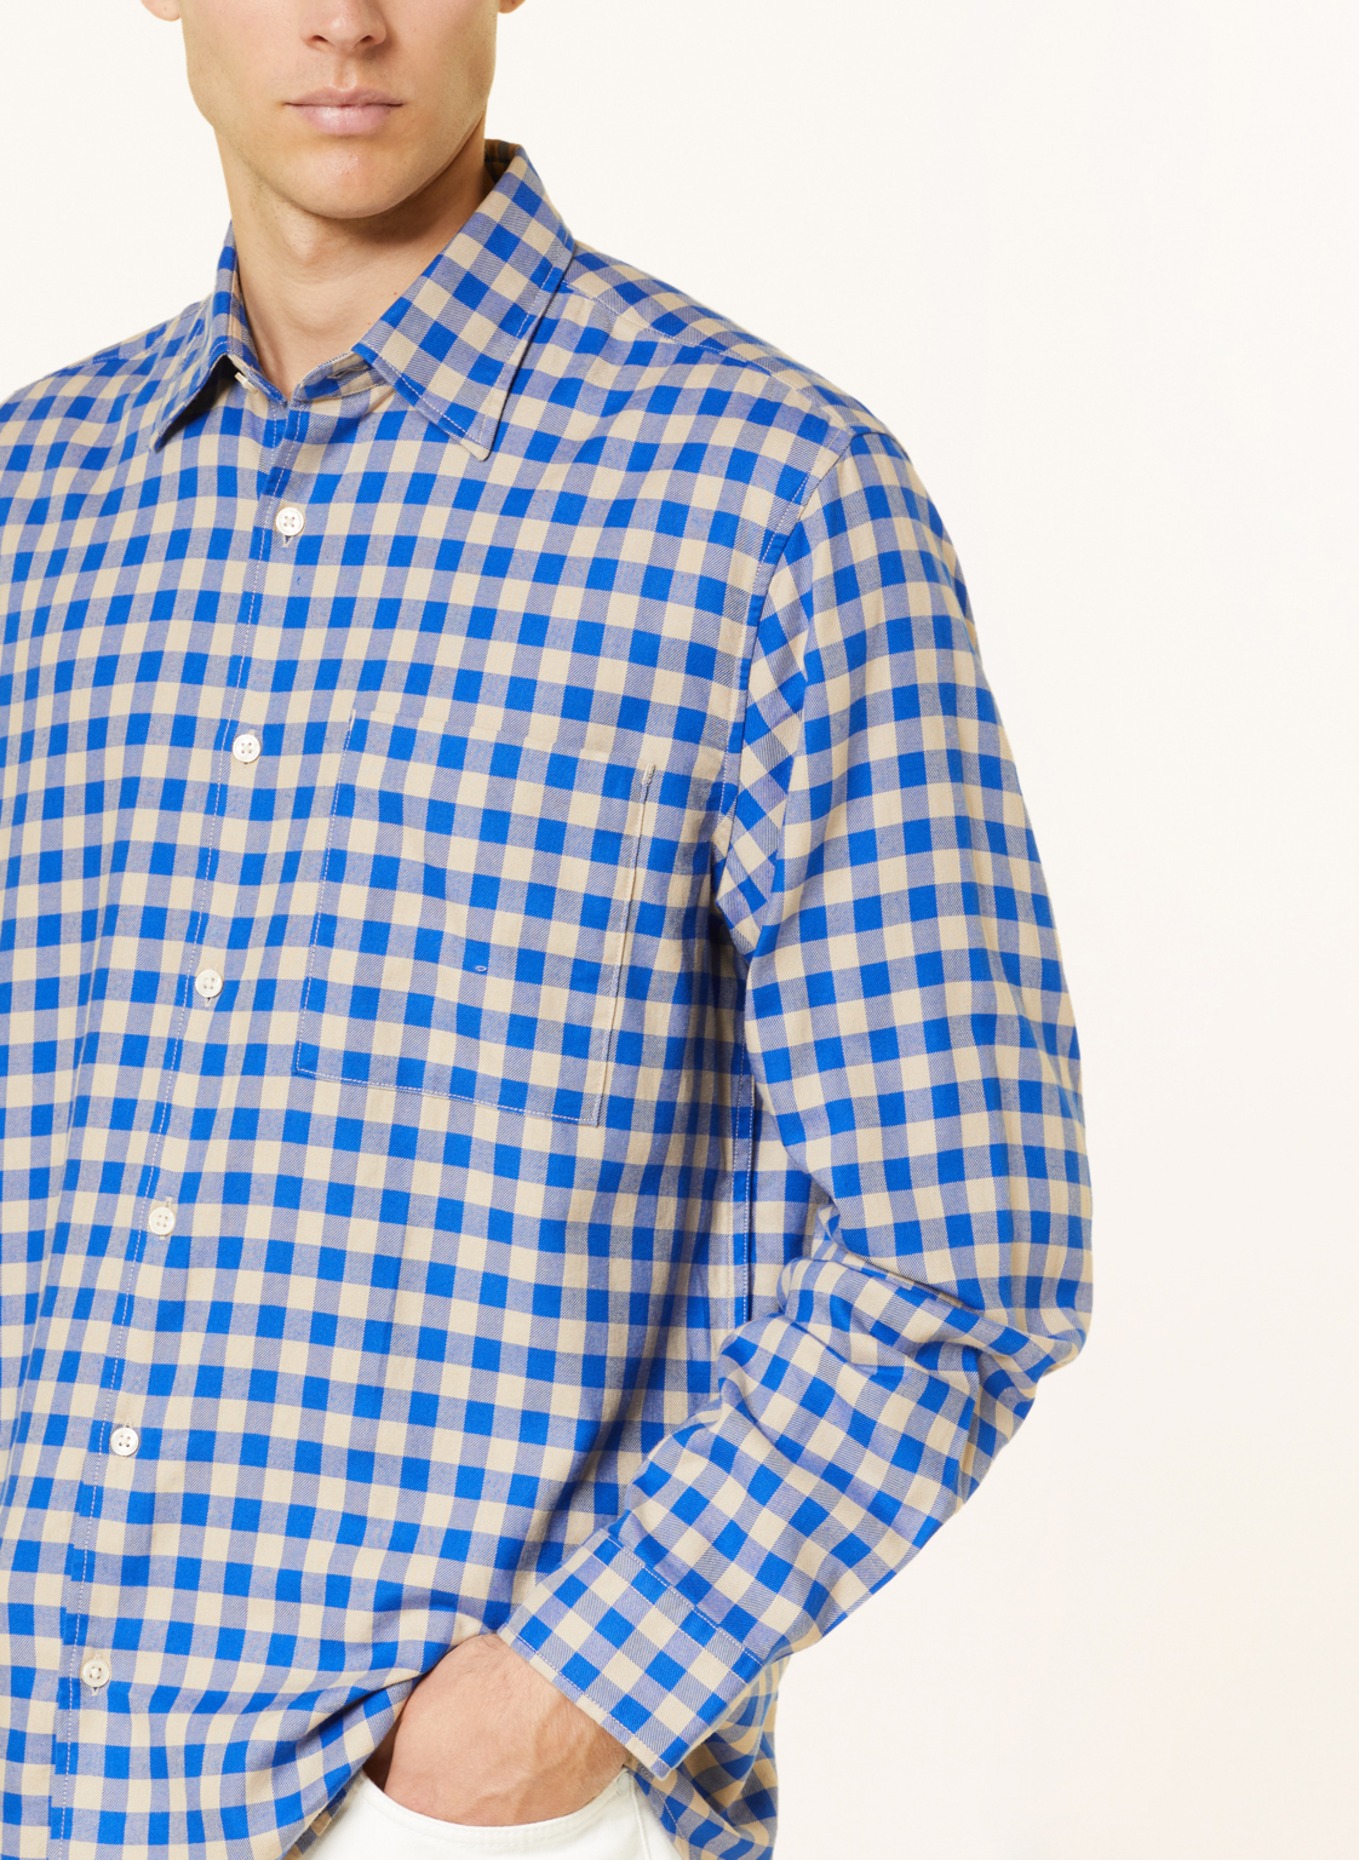 Marc O'Polo Shirt regular fit, Color: BLUE/ CREAM (Image 4)